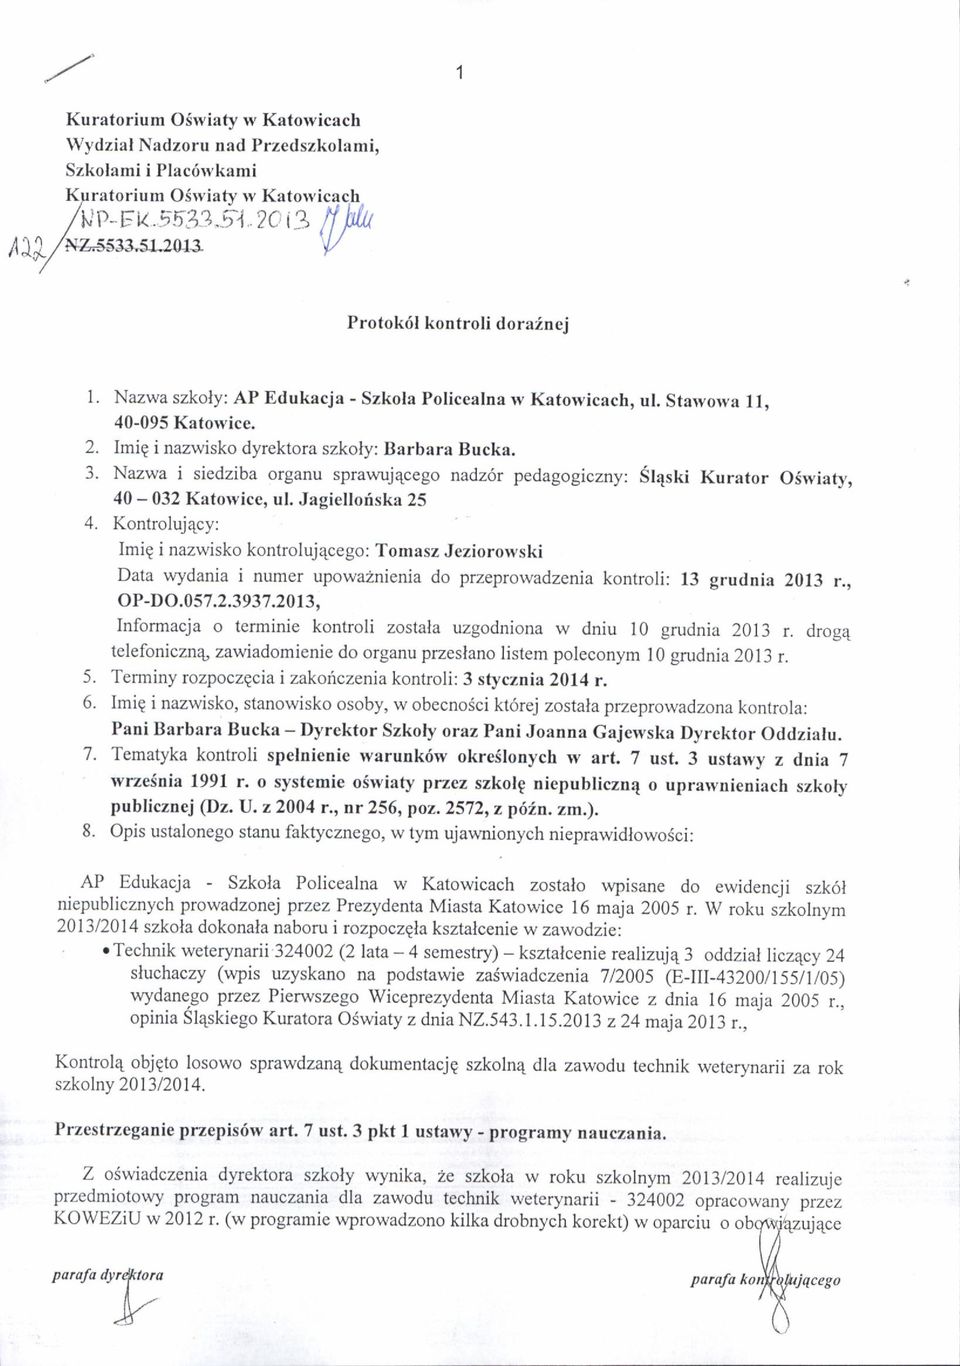 Kontrolujqcy: Imig i nazwisko kontrolujecego: Tomasz Jeziorotvski Data wydania i numer upowa2nienia do przeprowadzenia kontroli: 13 grudnia 2013 r.,, op-do.057.2.3937.